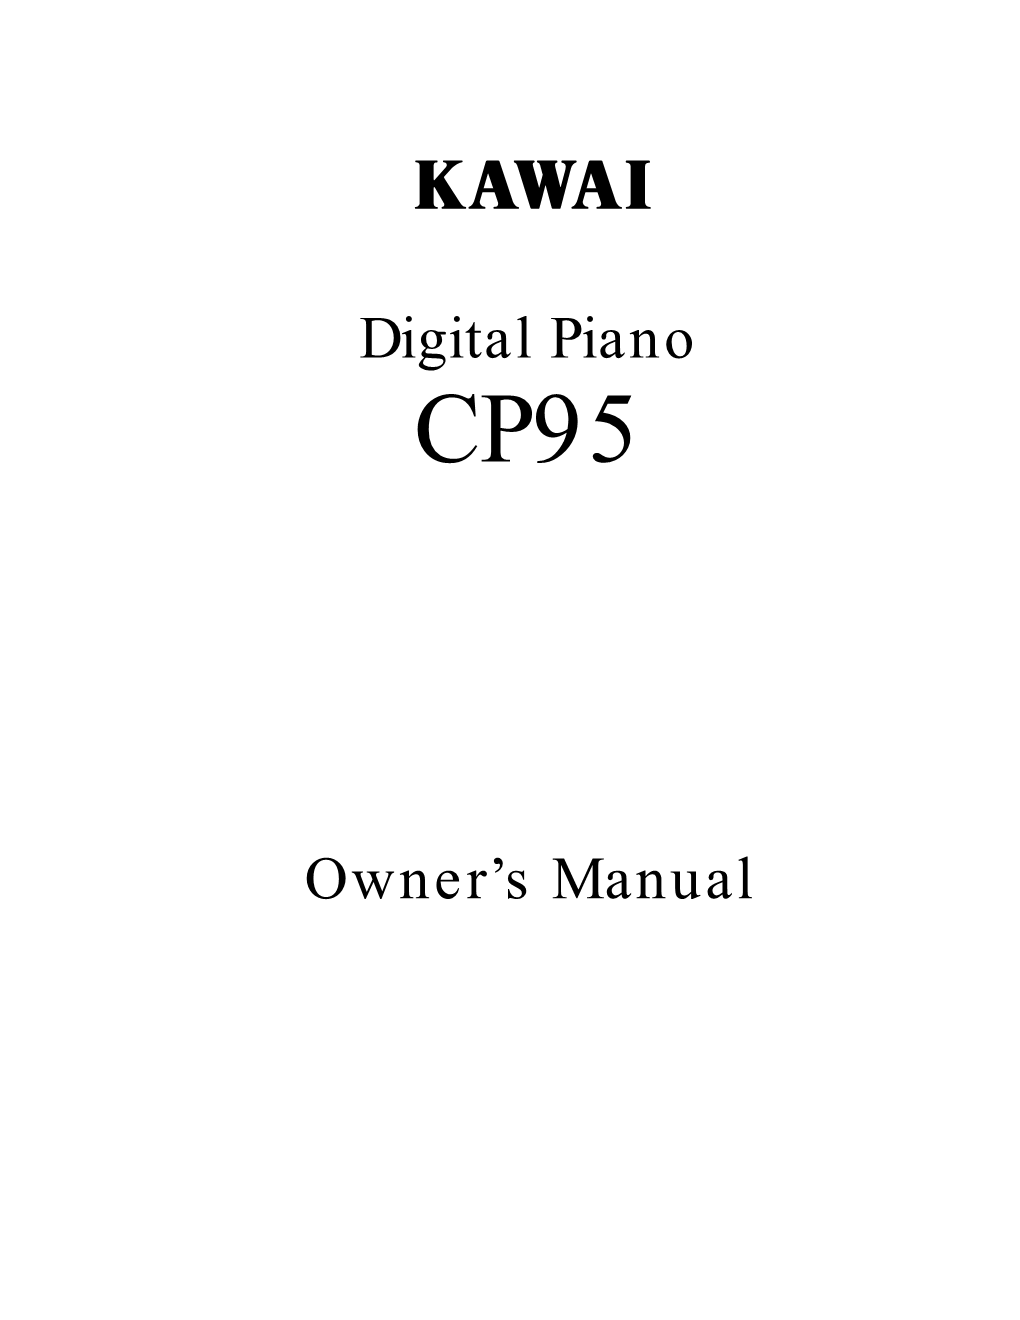 Owner's Manual (PDF)